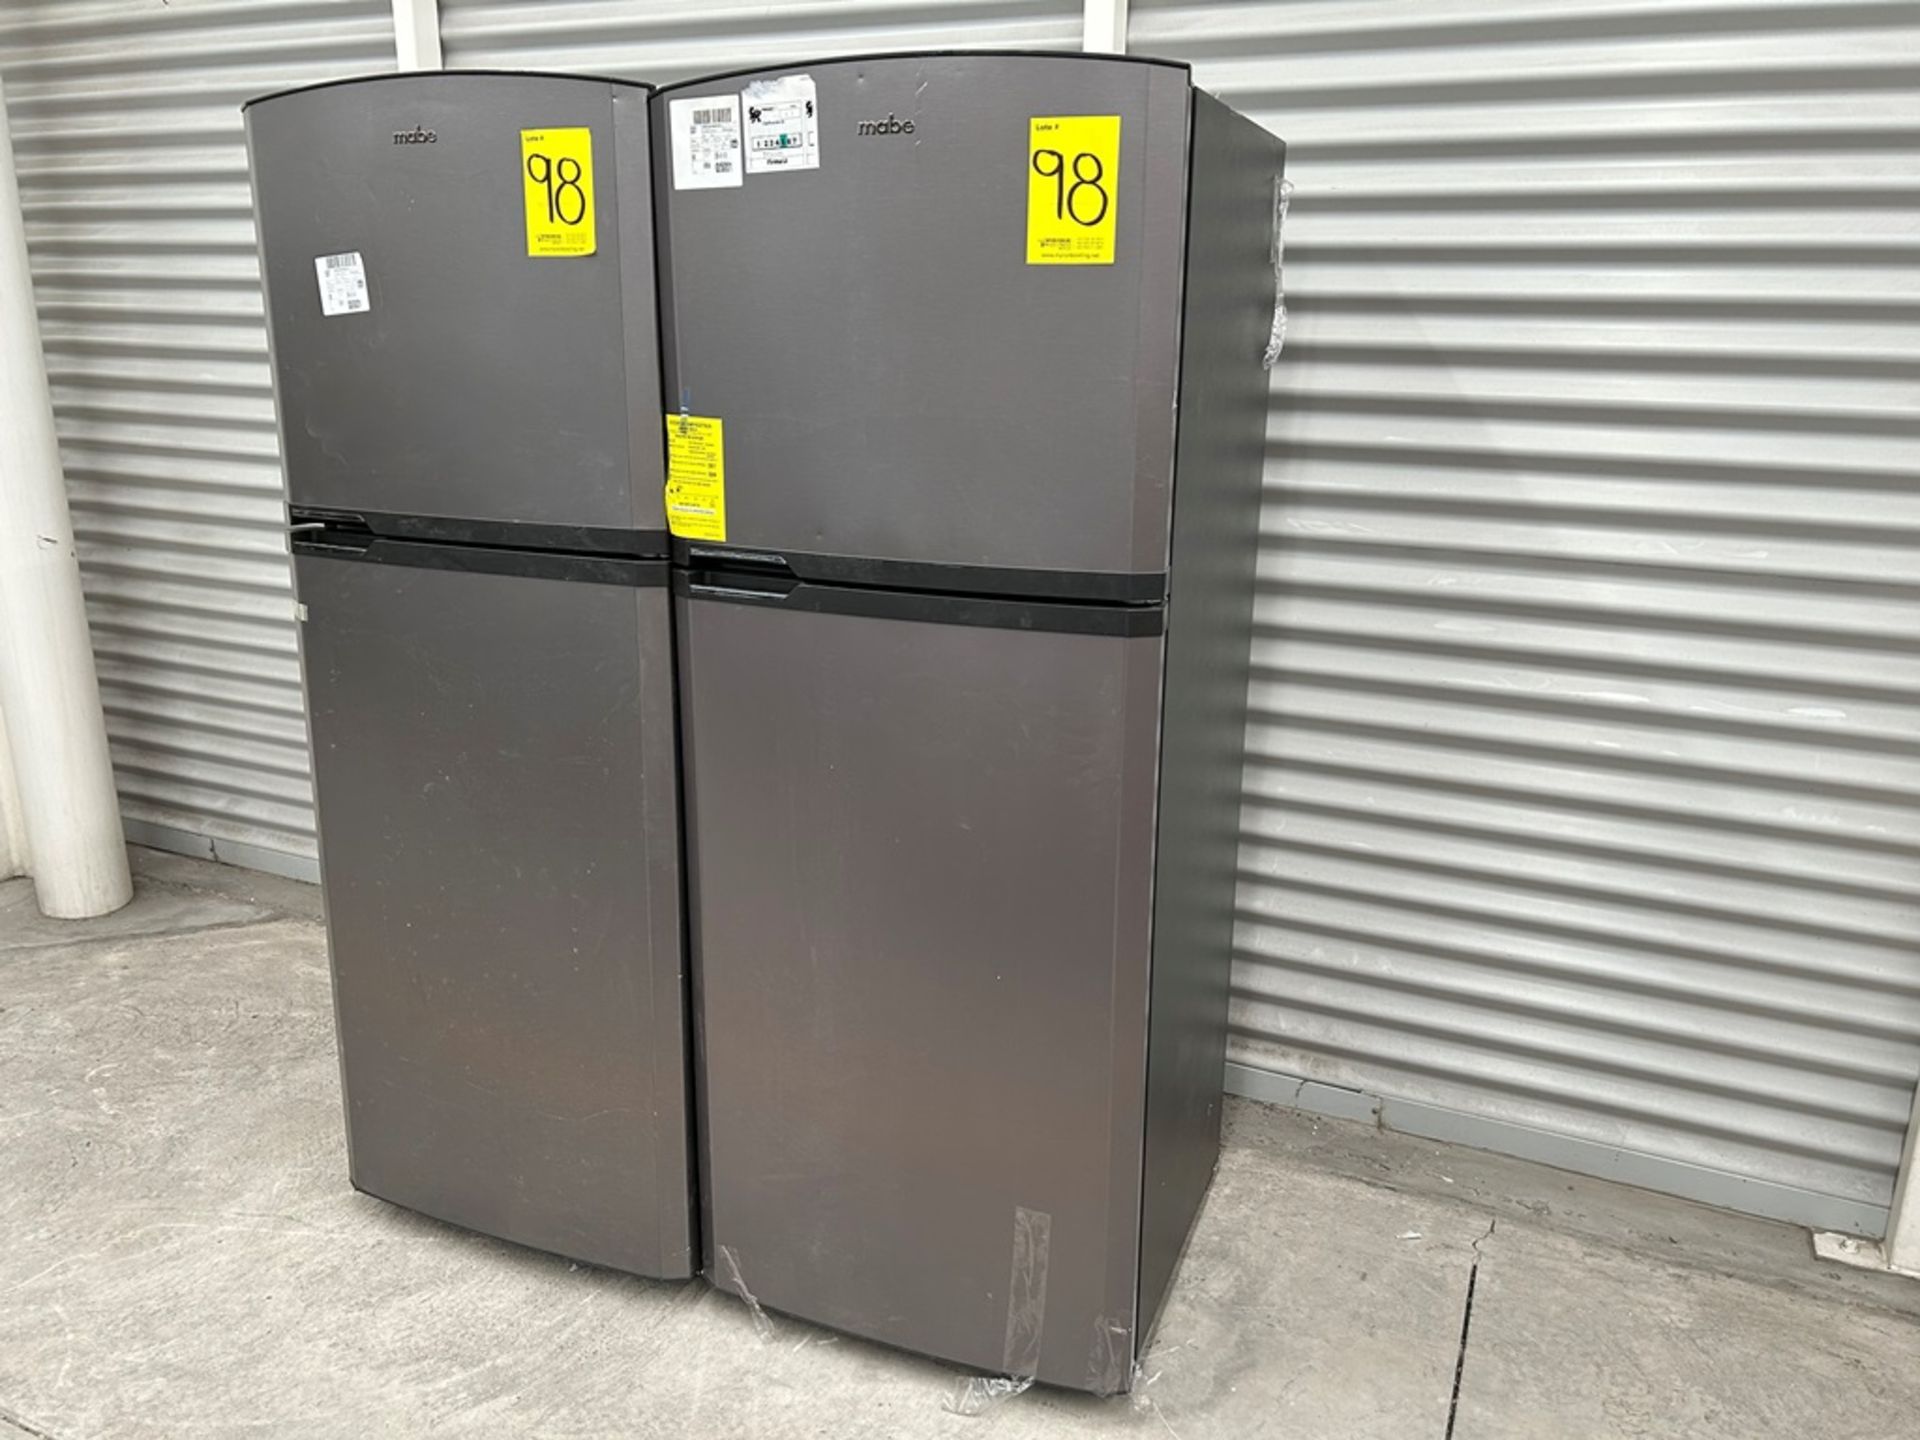 Lote de 2 refrigeradores contiene: 1 Refrigerador Marca MABE, Modelo RME360PVMRM0, Serie 04453, Col - Image 2 of 16